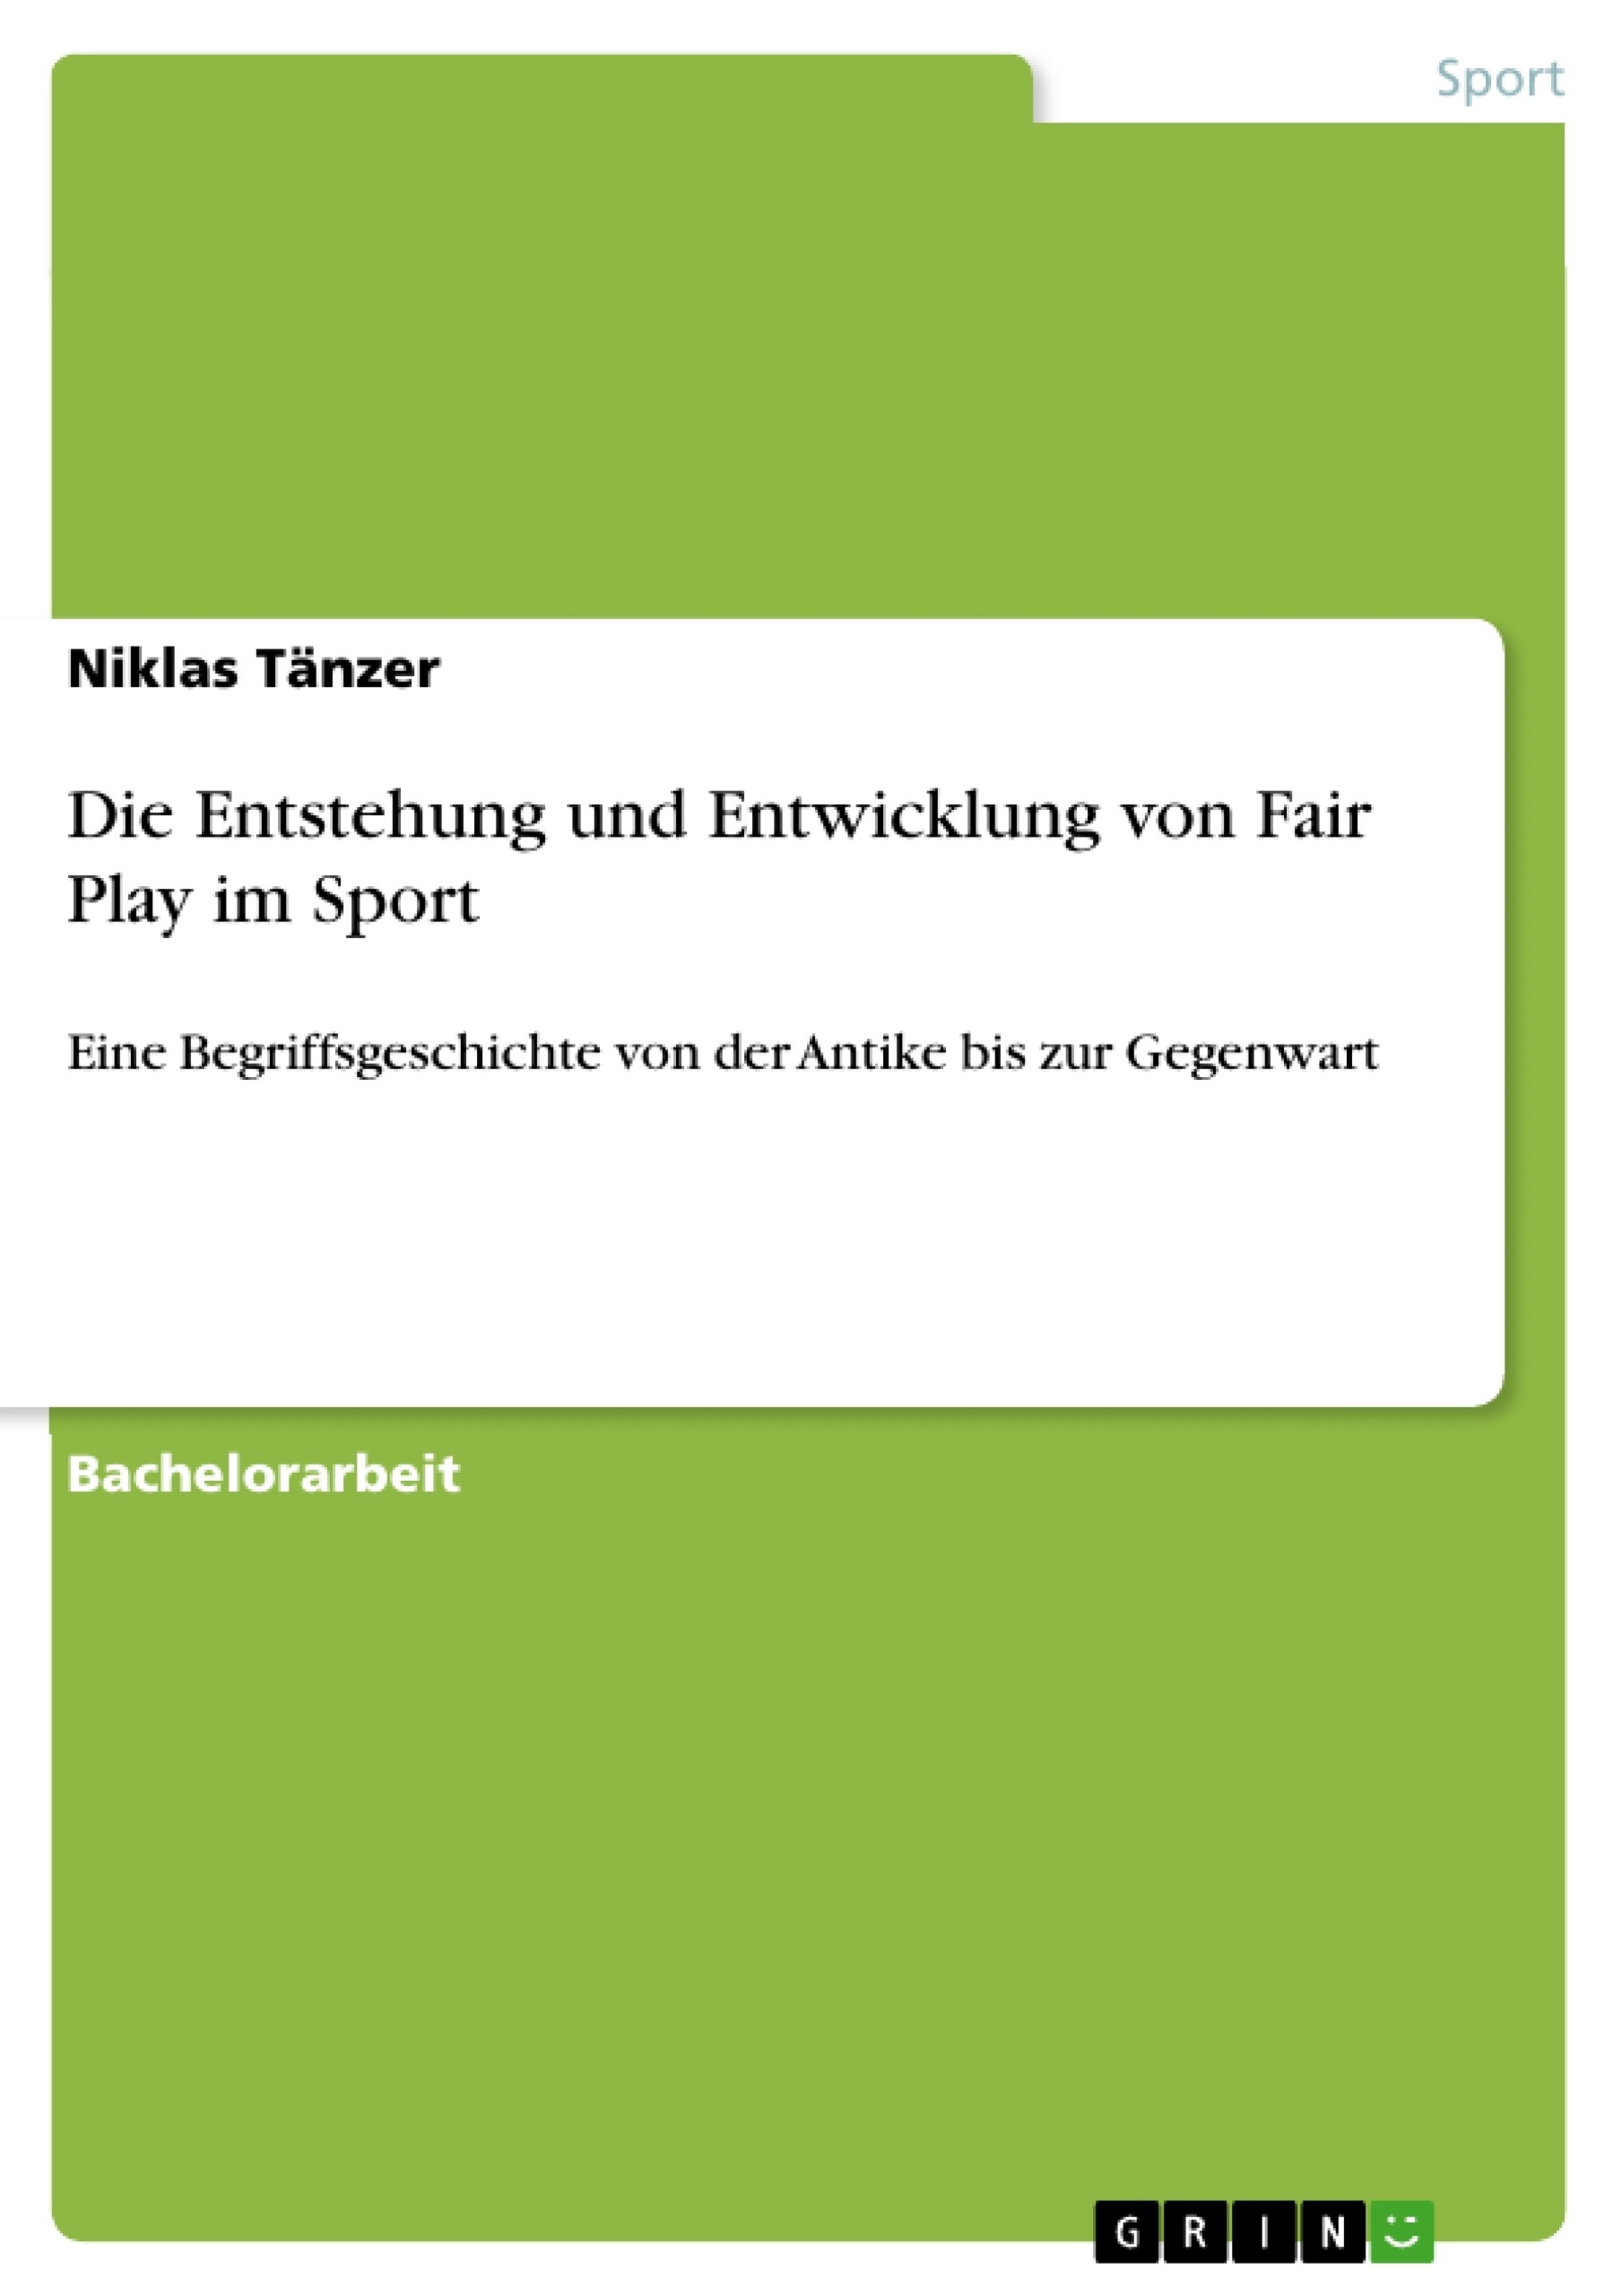 Título: Die Entstehung und Entwicklung von Fair Play im Sport